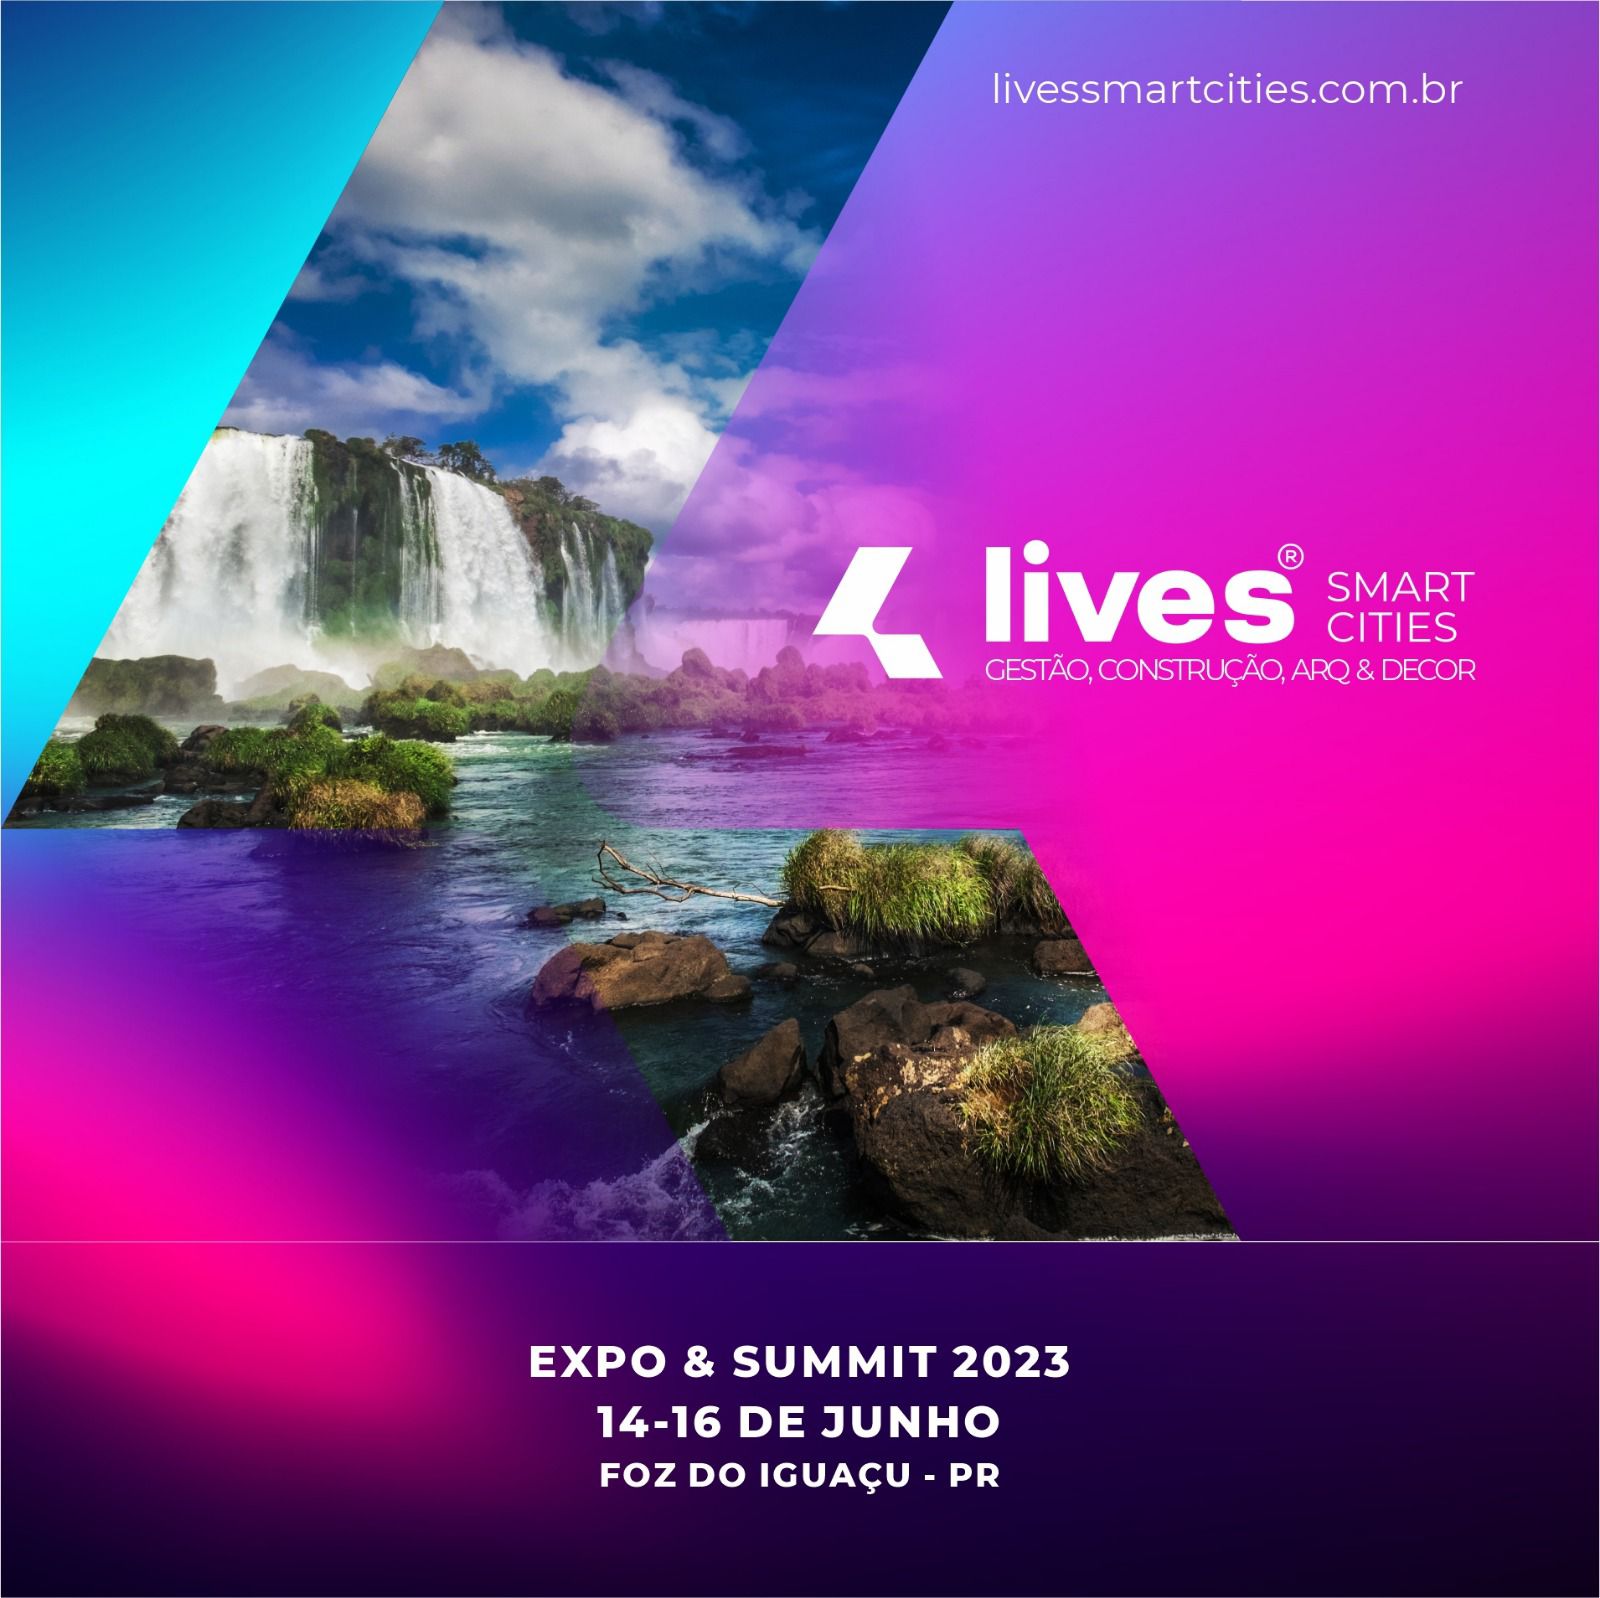 Lives Smart Cities 2023 Expo & Summit: evento está marcado para junho, em Foz do Iguaçu